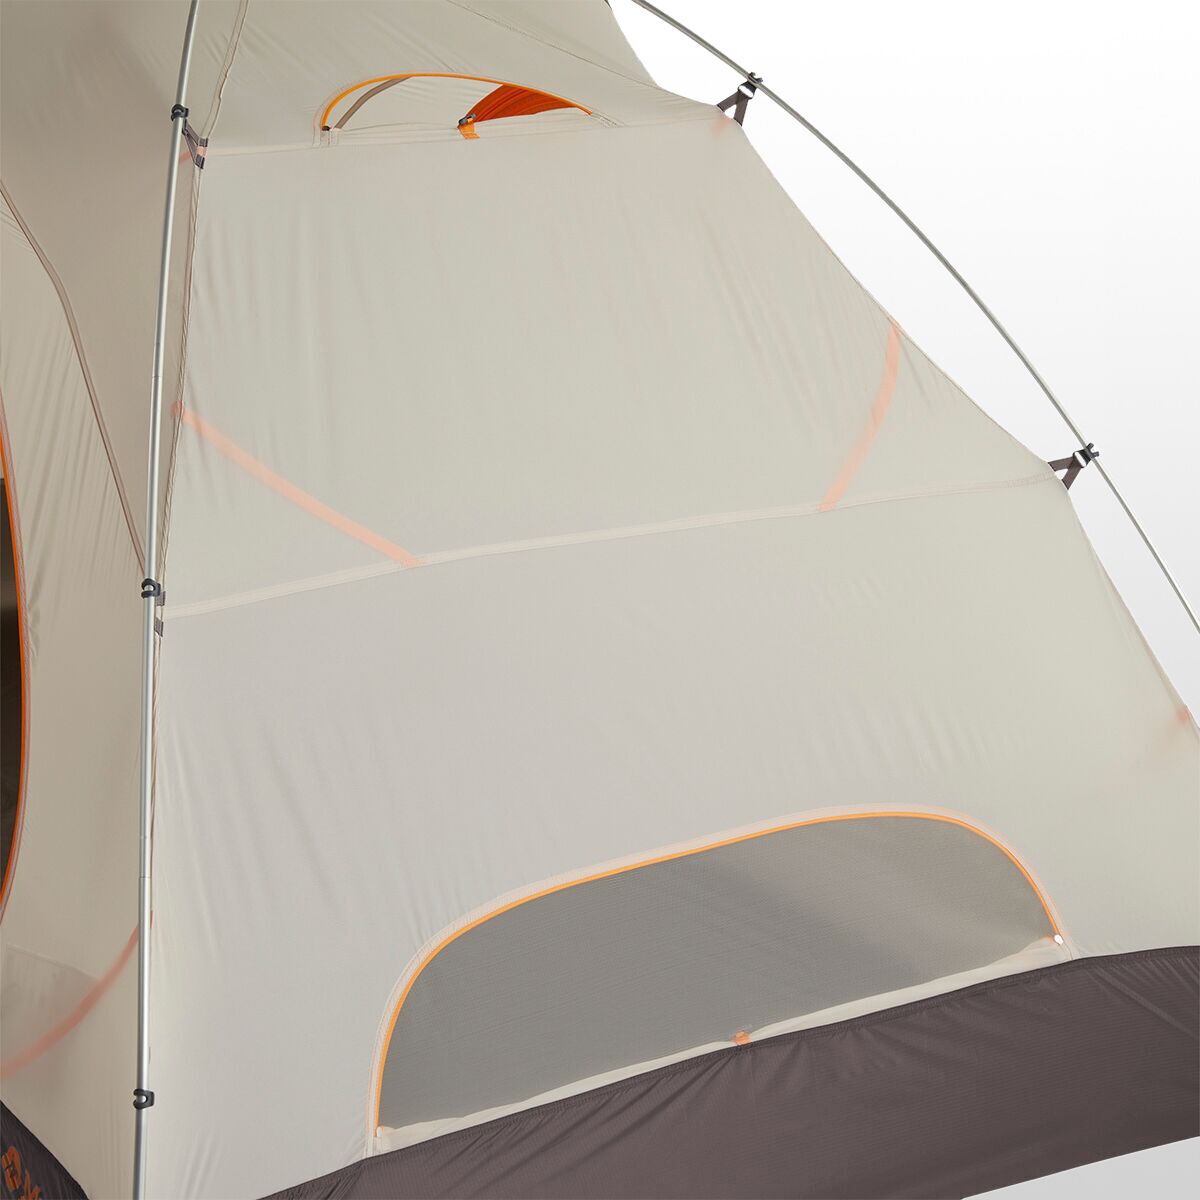 마모트 Marmot Fortress UL Tent: 2-Person 3-Season - Hike & Camp